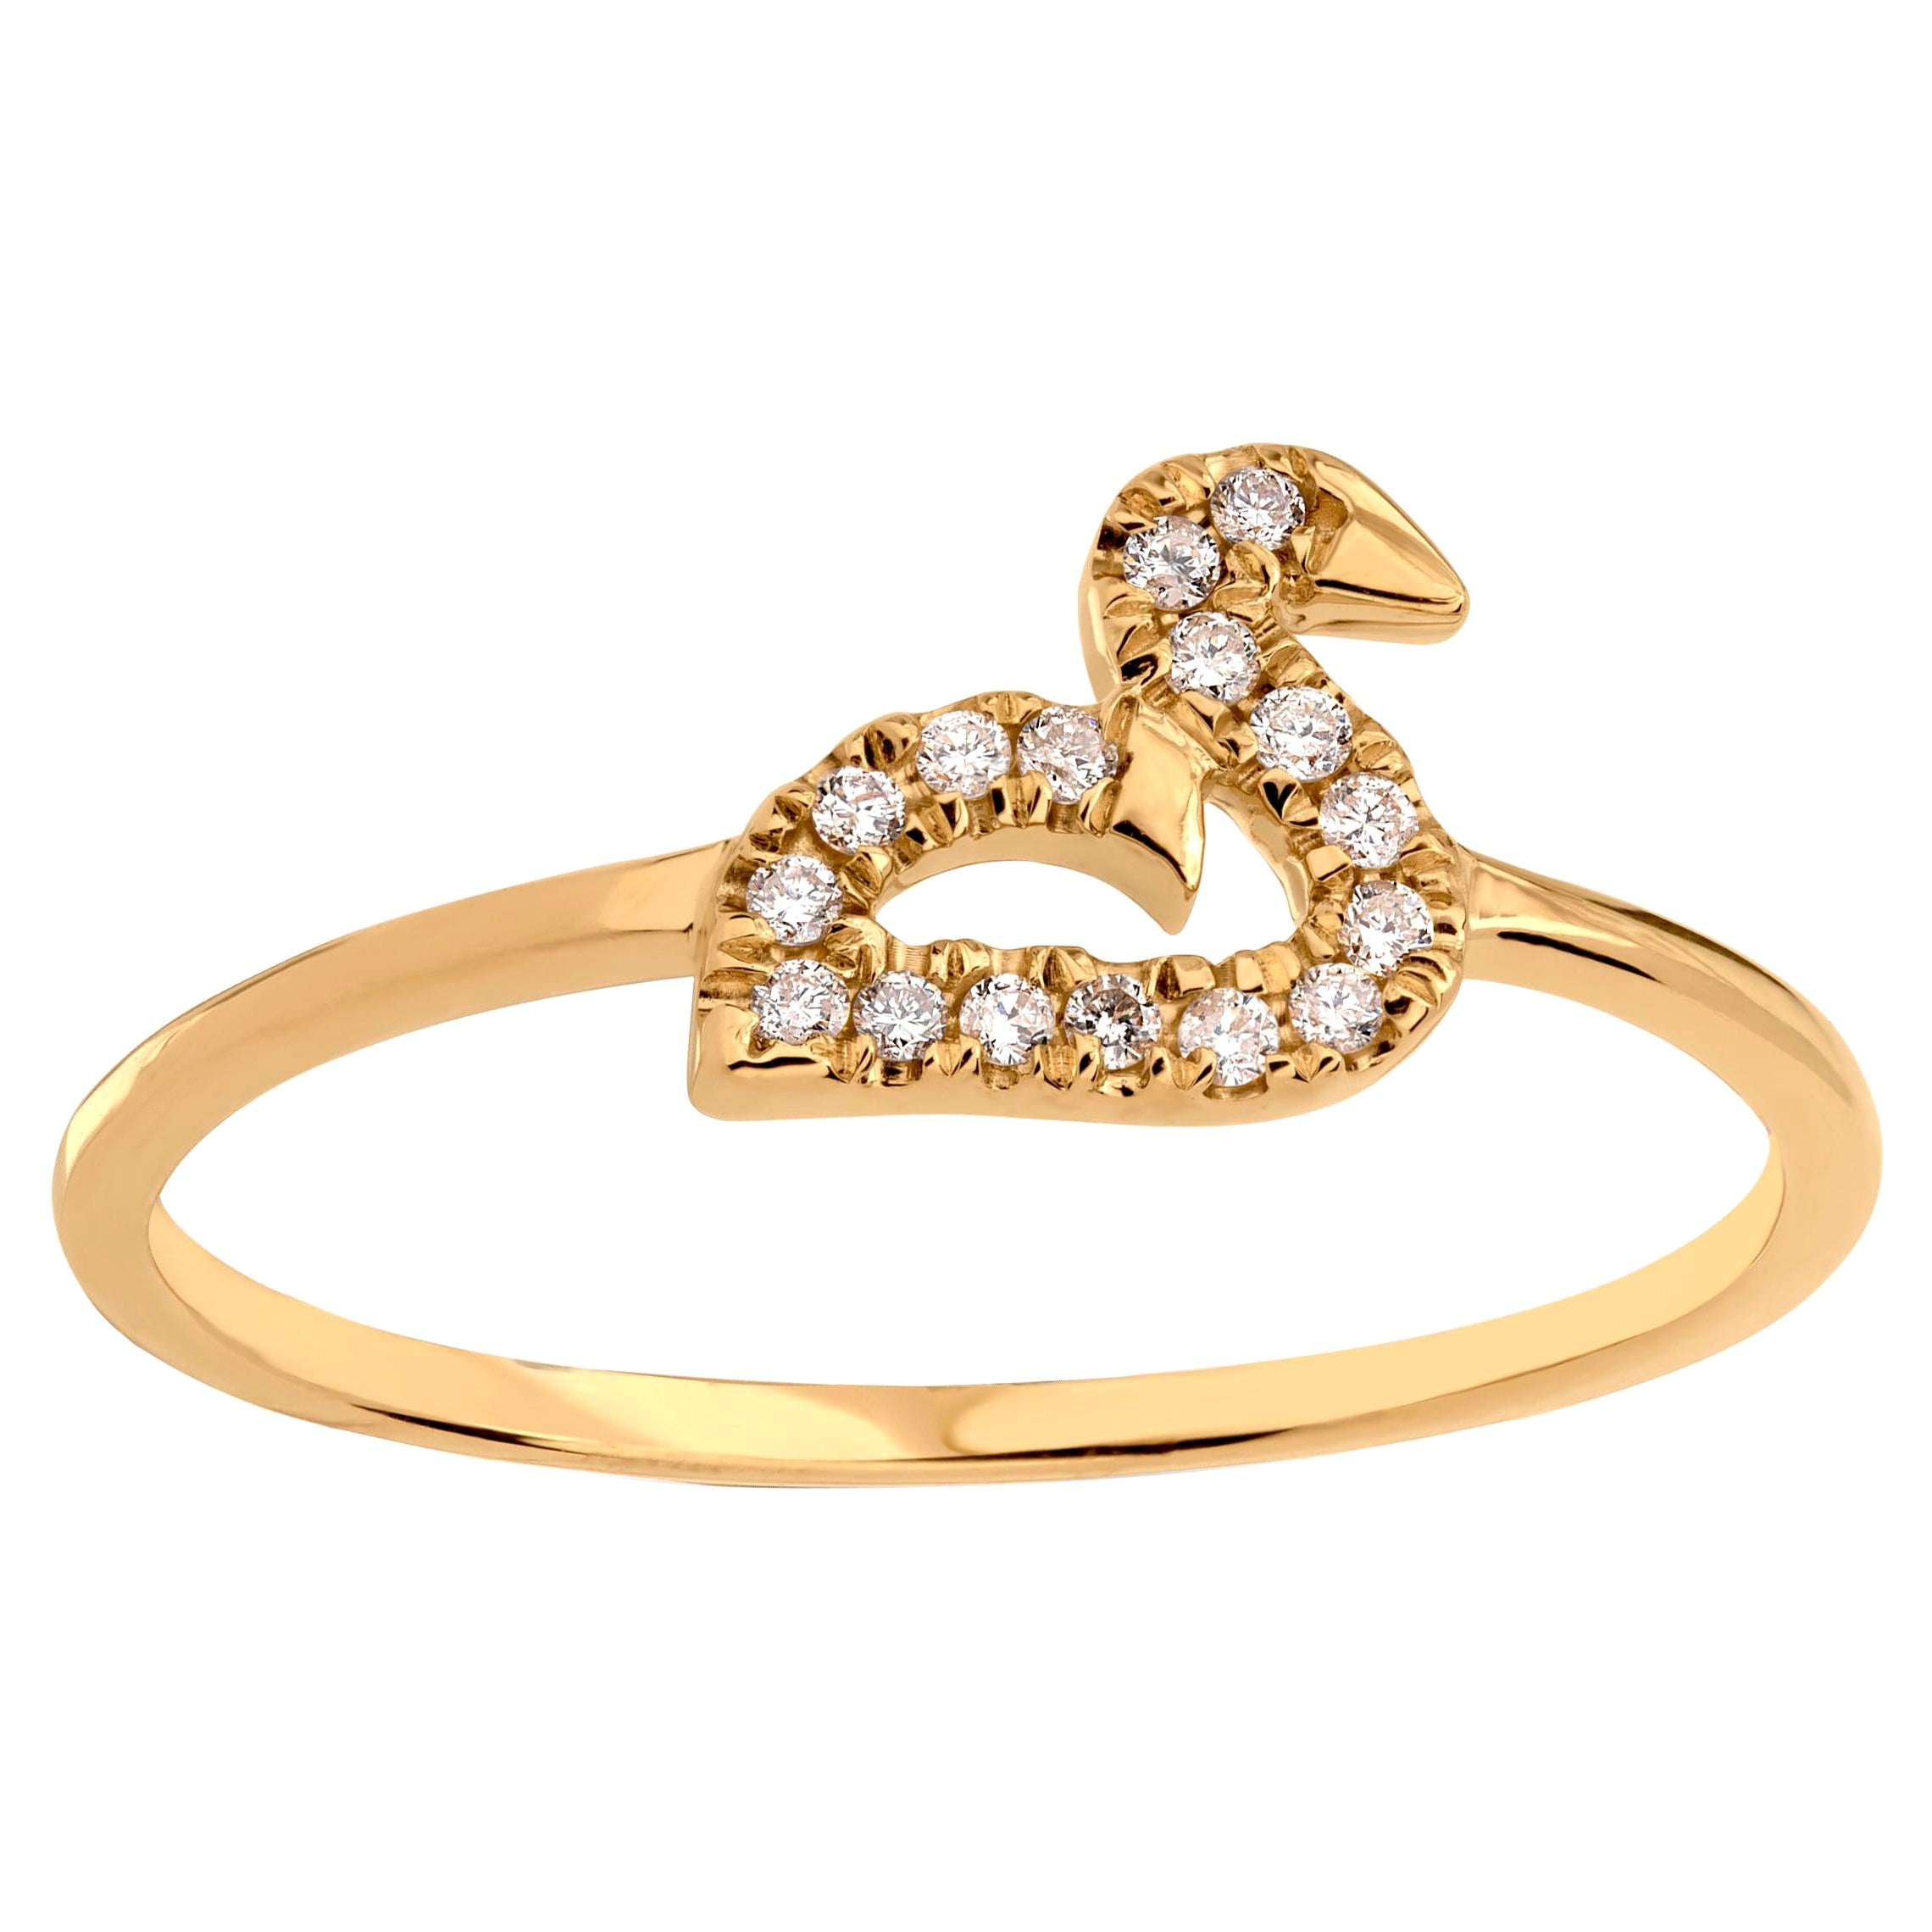 Luxle Swan Diamond Ring in 18K Yellow Gold